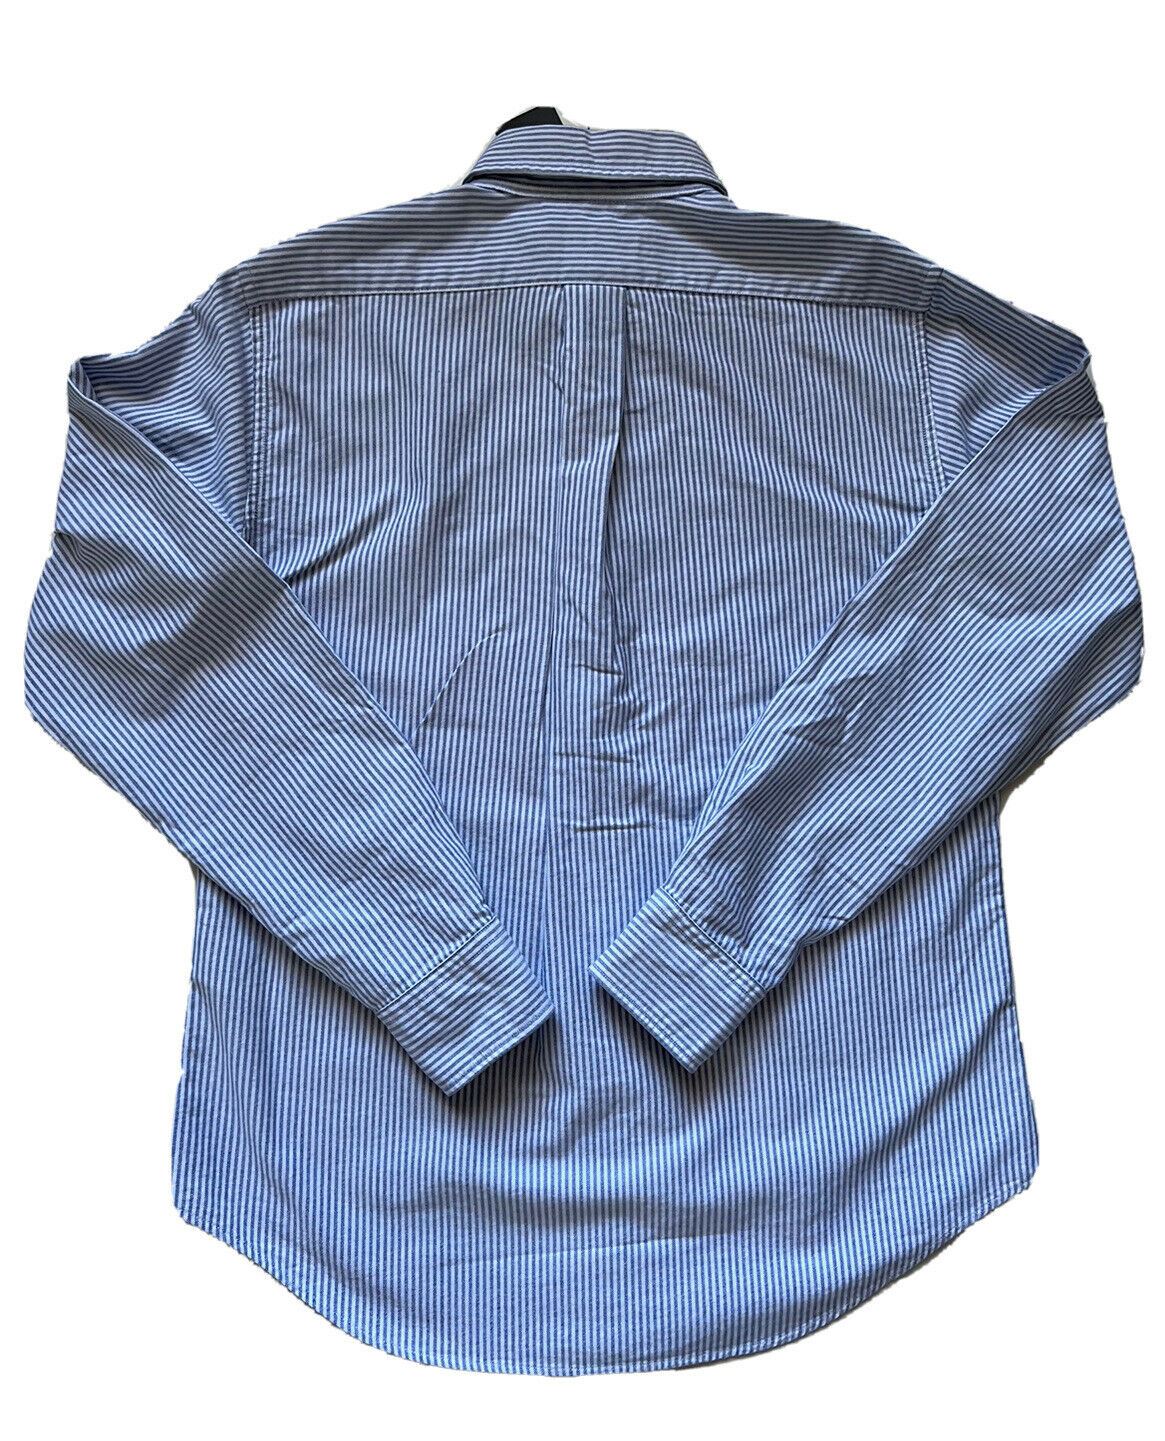 NWT $89 Ralph Lauren Мужская классическая рубашка классического кроя в бело-синюю полоску, маленькая